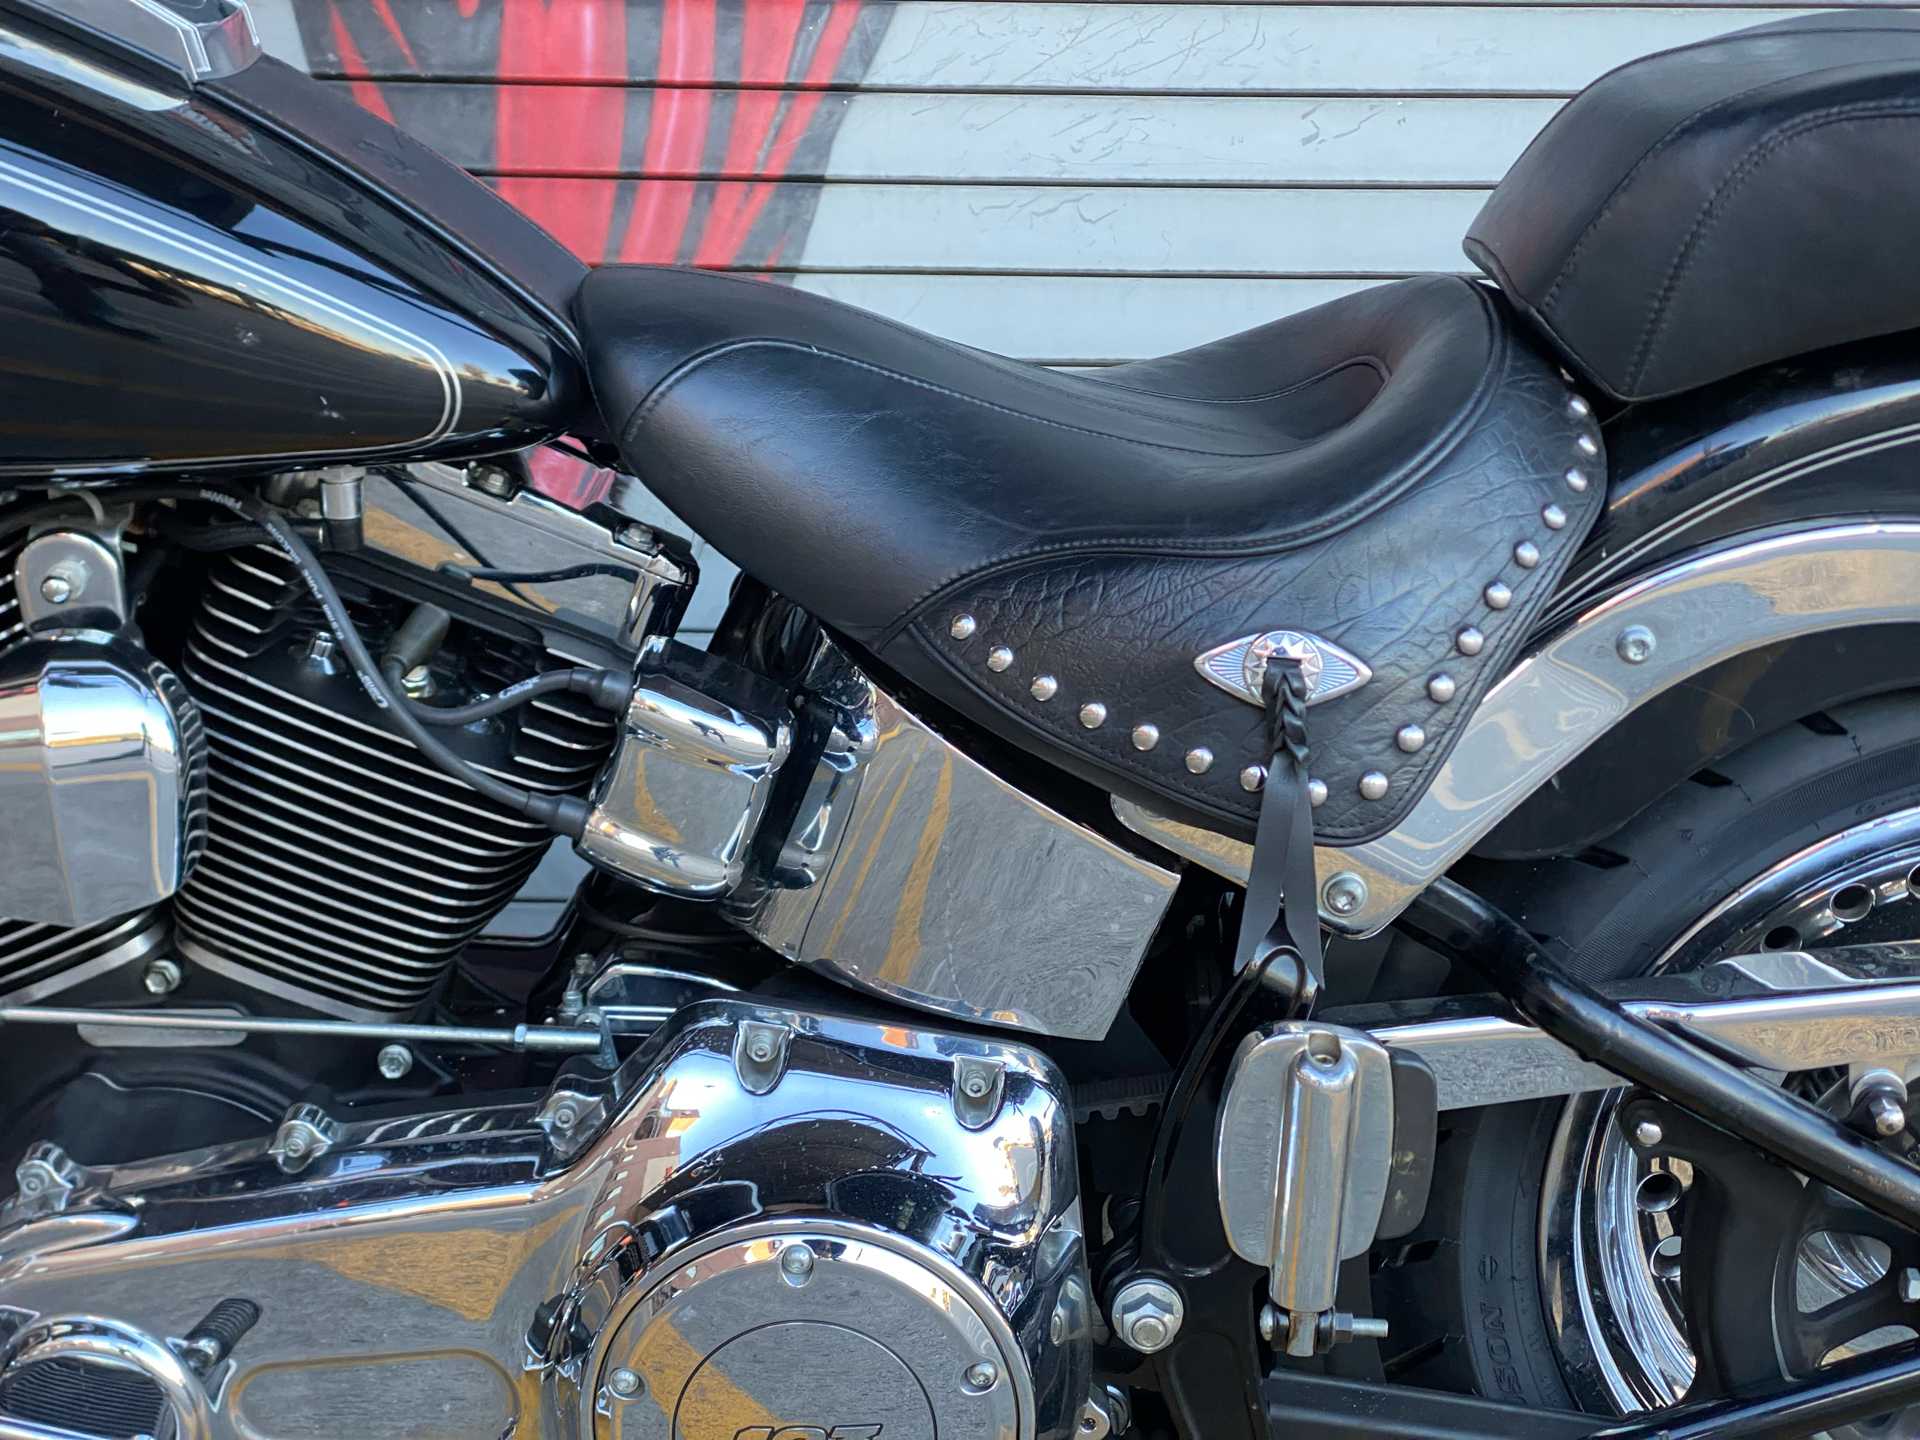 2017 Harley-Davidson Fat Boy® in Carrollton, Texas - Photo 16